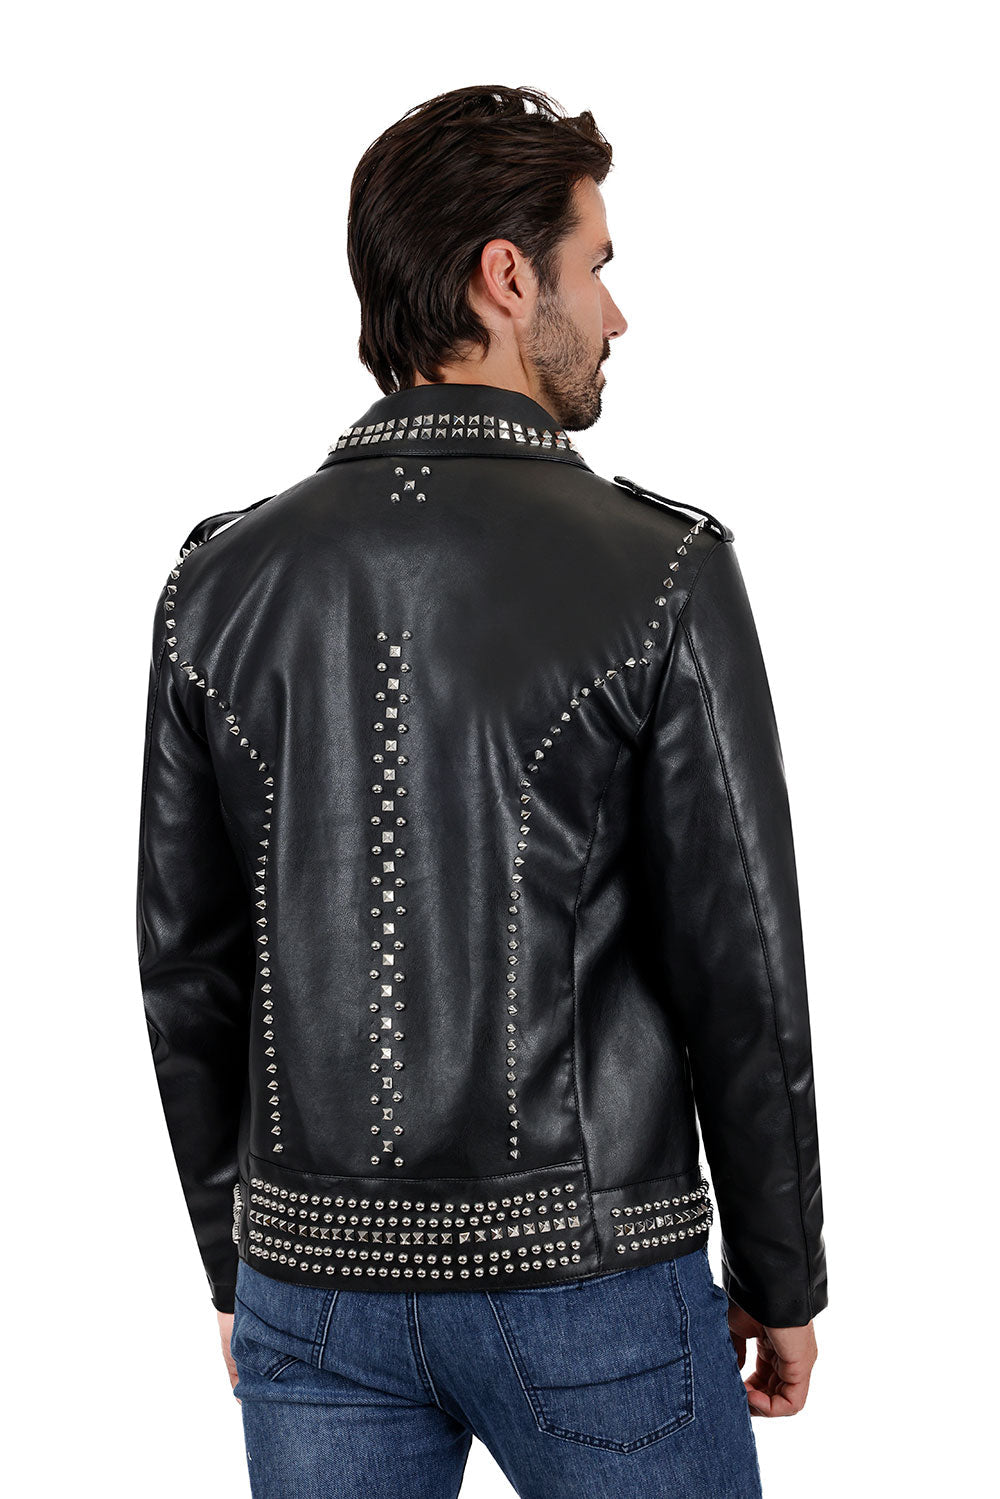 Barabas Men's Spiked Motorcycle Biker Faux Leather Jacket 3JPU26 Black Silver